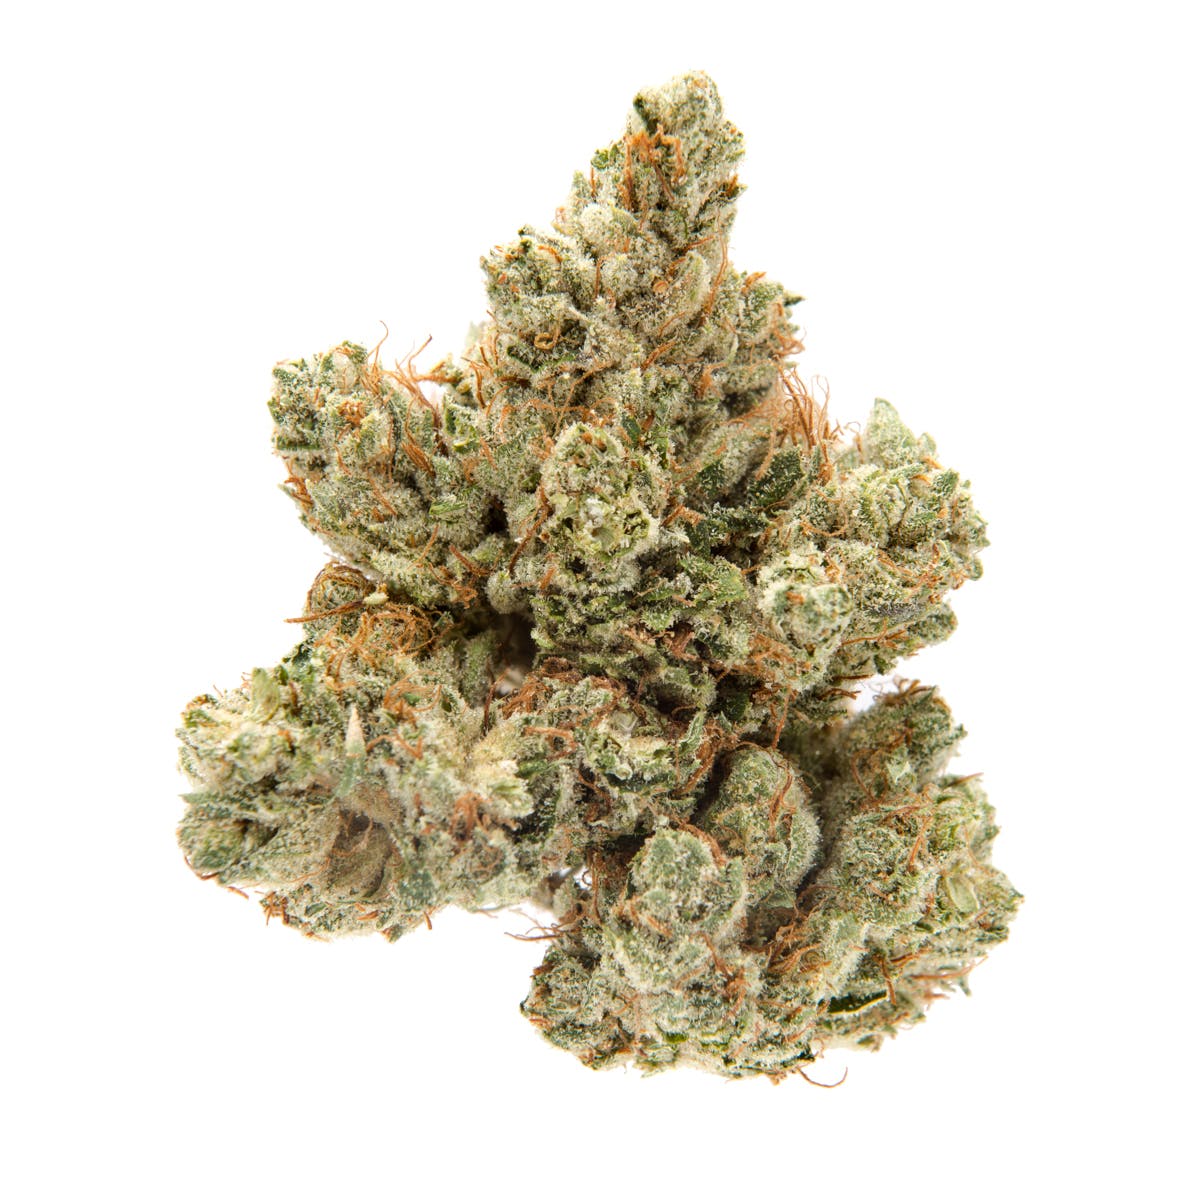 marijuana-dispensaries-hcma-nc-co-op-2c-inc-in-sun-valley-crown-og